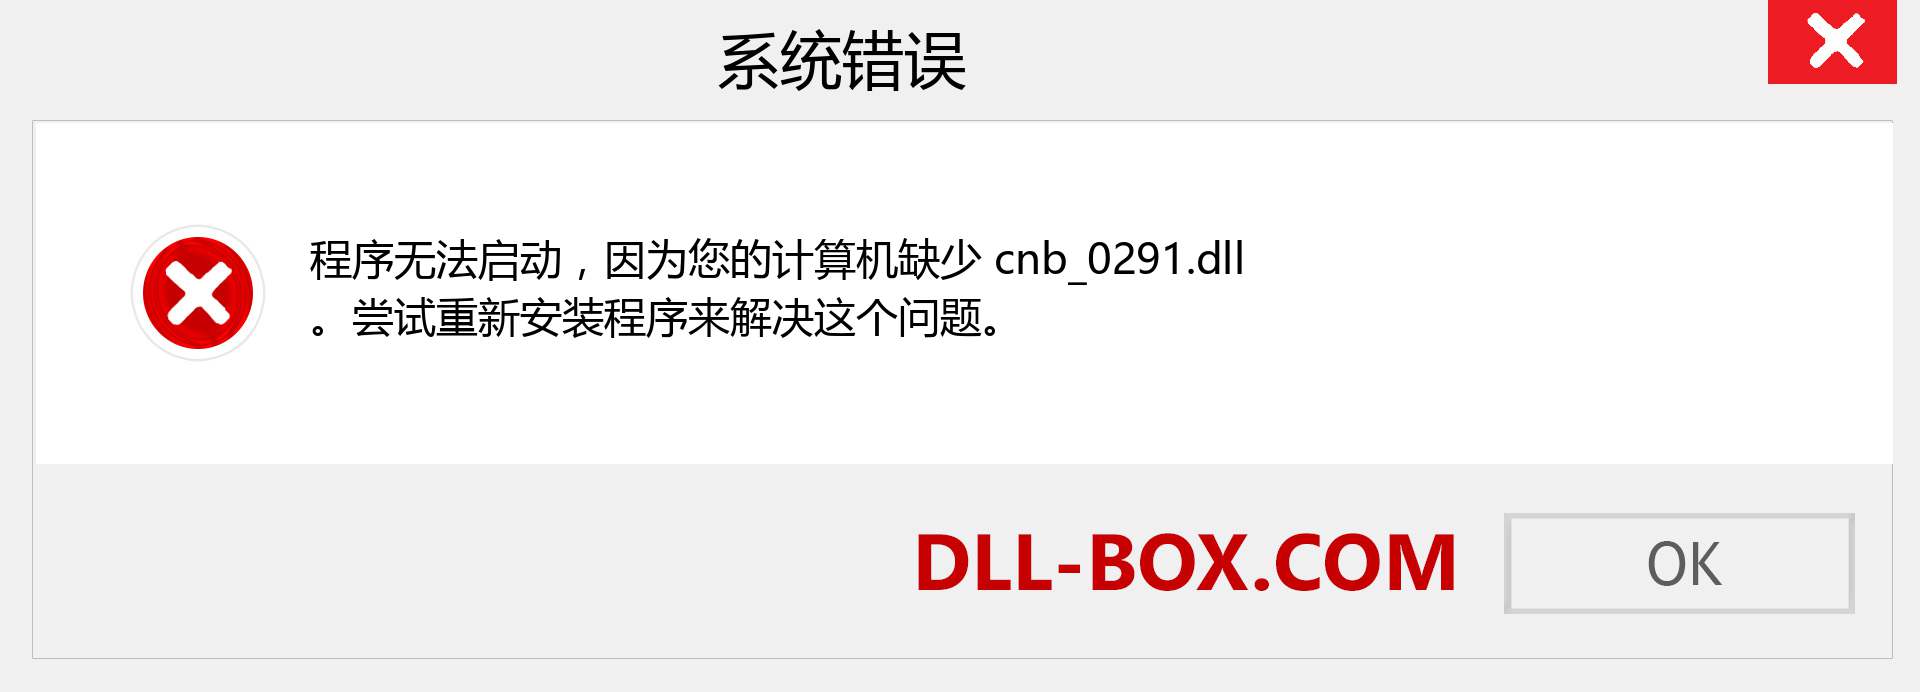 cnb_0291.dll 文件丢失？。 适用于 Windows 7、8、10 的下载 - 修复 Windows、照片、图像上的 cnb_0291 dll 丢失错误